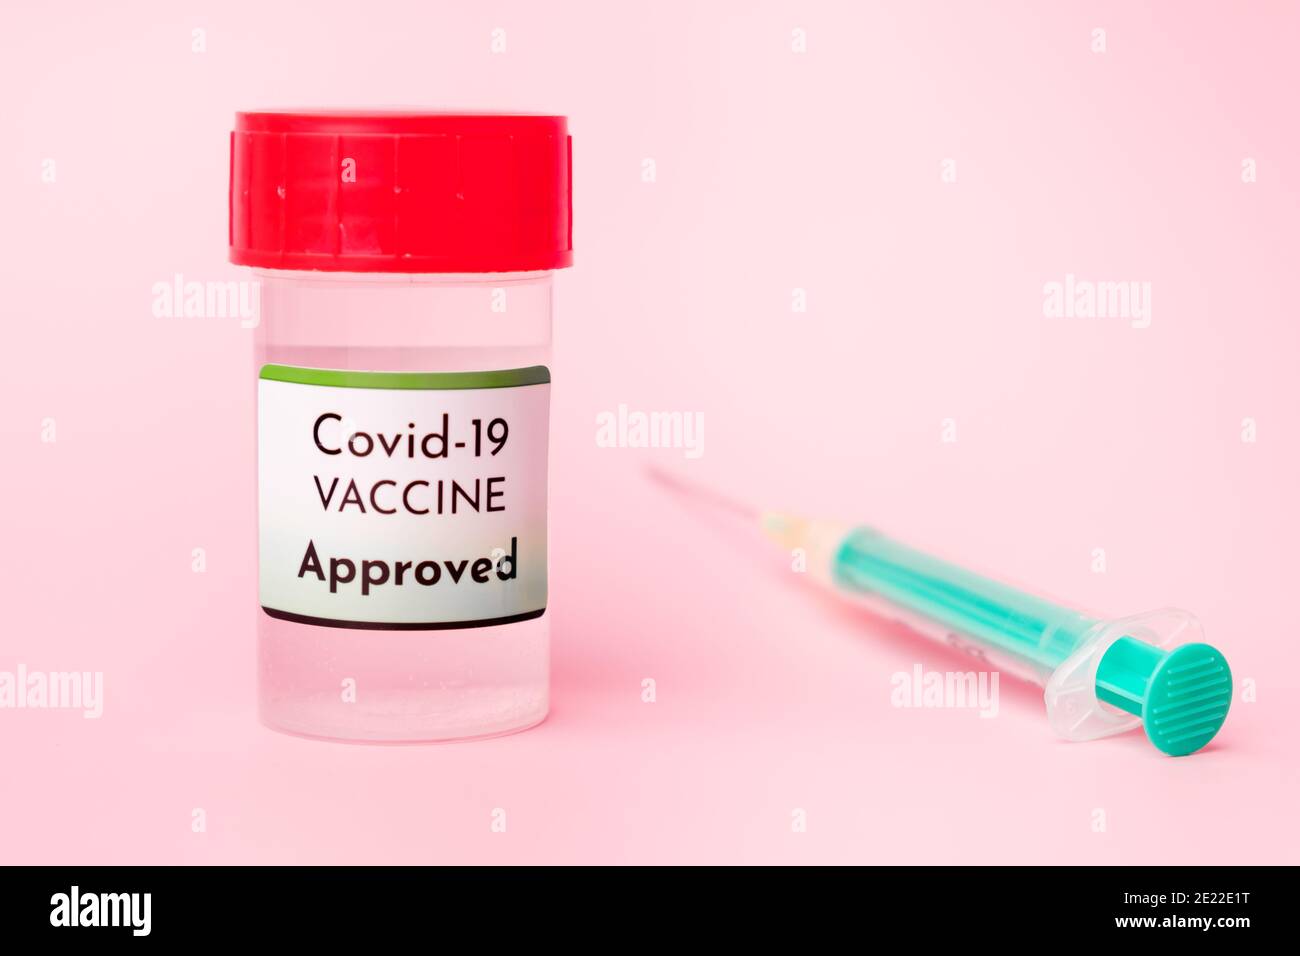 Vaccino Covid-19 approvato nel flacone e siringa monouso per iniezione su fondo rosa. Prevenzione del coronavirus, Sars-Cov-2. Foto Stock